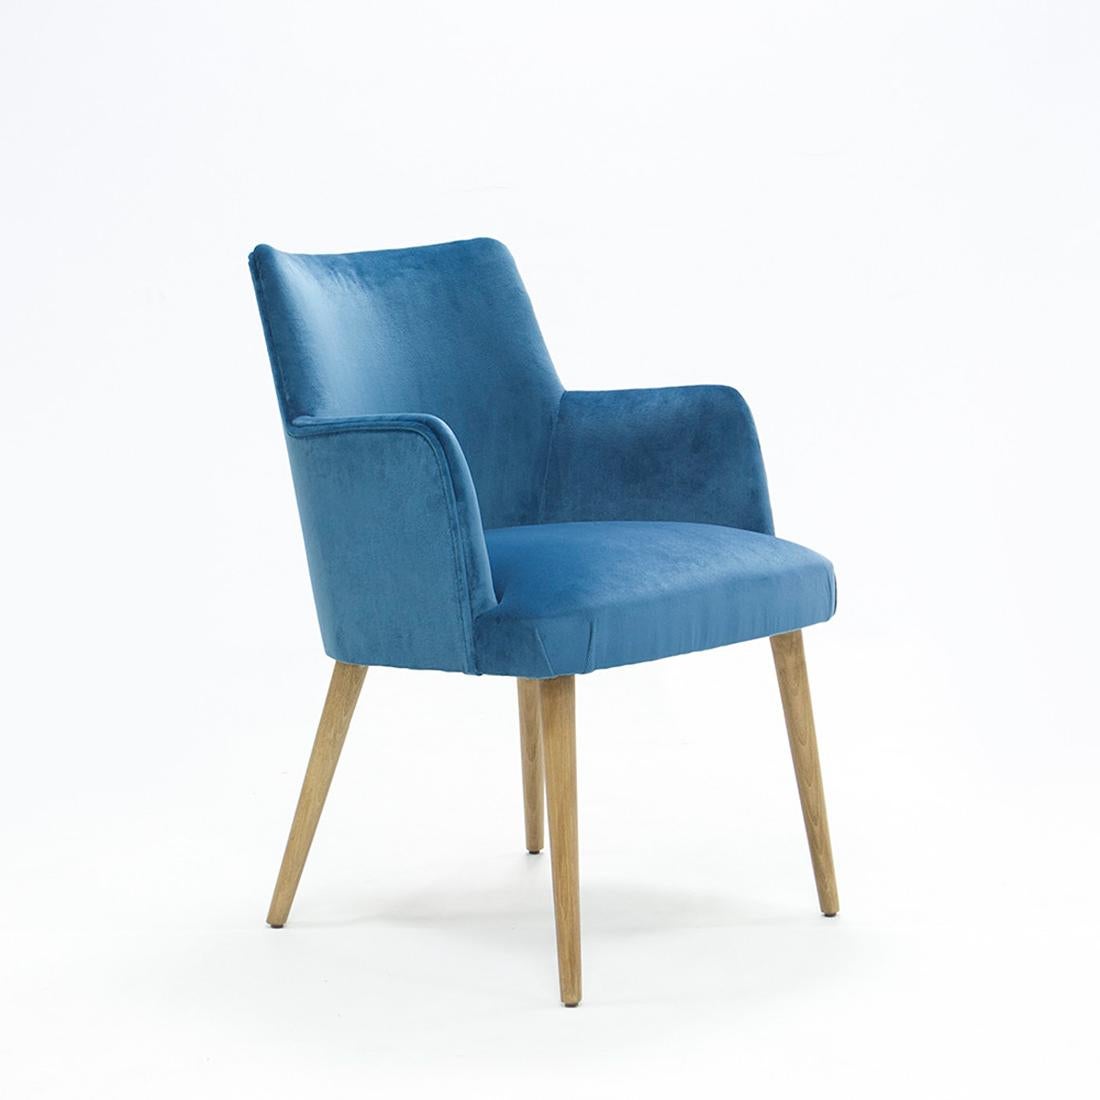 Stuhl Lalia mit Struktur aus Massivholz, gepolstert
sitz und Rückenlehne, bezogen mit hochwertigem blauem Samt
stoff. Auf Anfrage auch mit anderen Stoffen erhältlich.
 